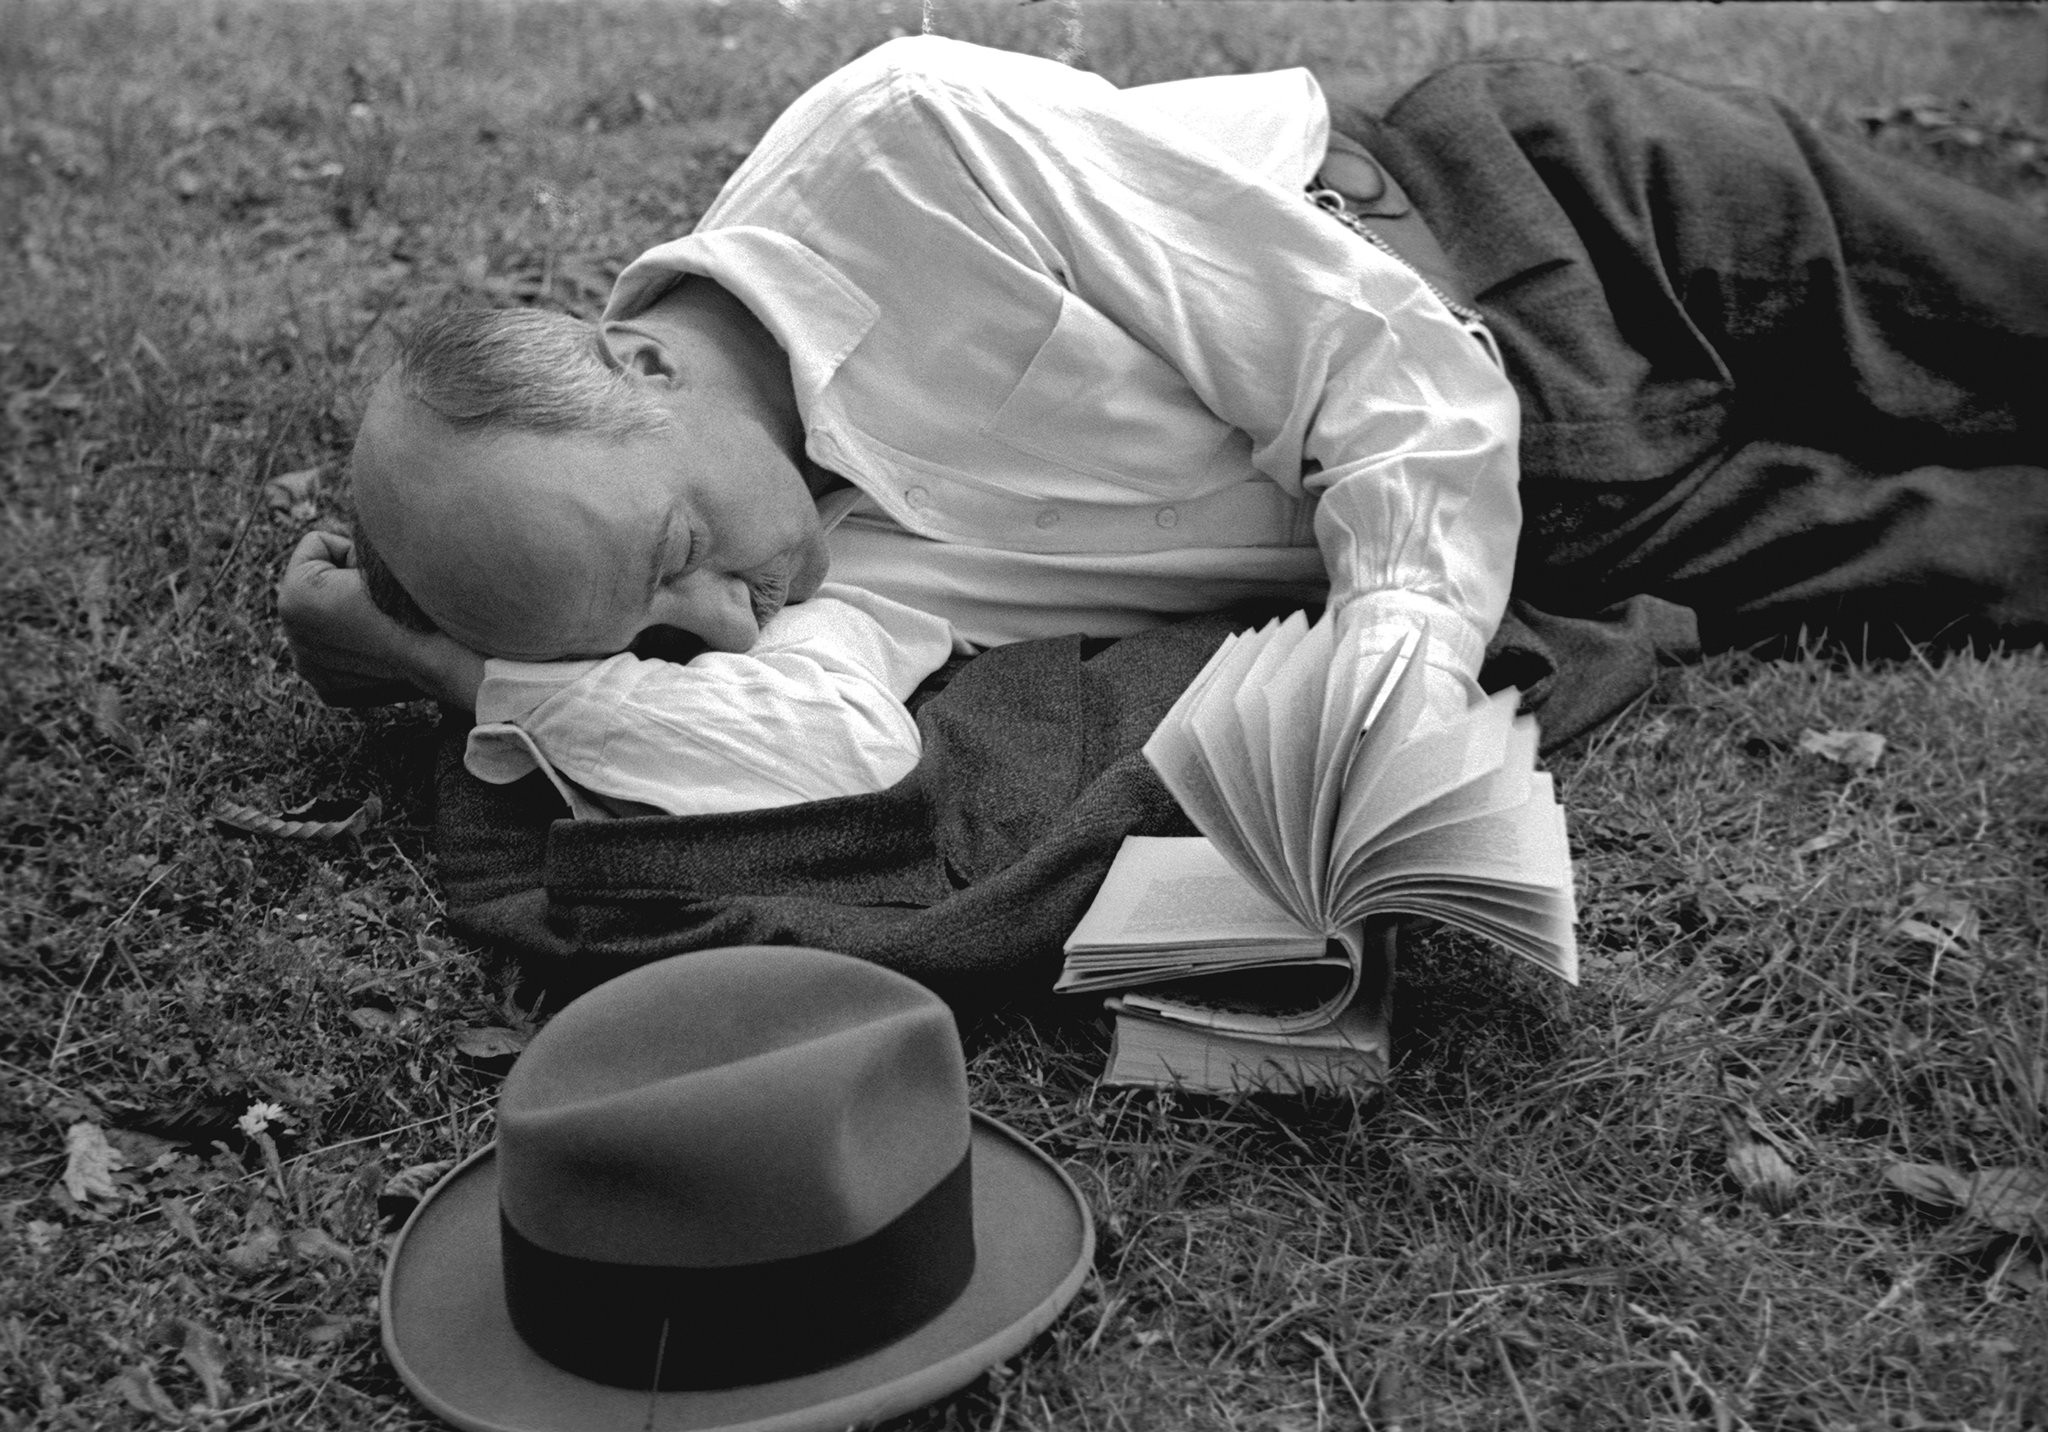 Чтение в траве, Париж, 1936. Фотограф Фред Стайн